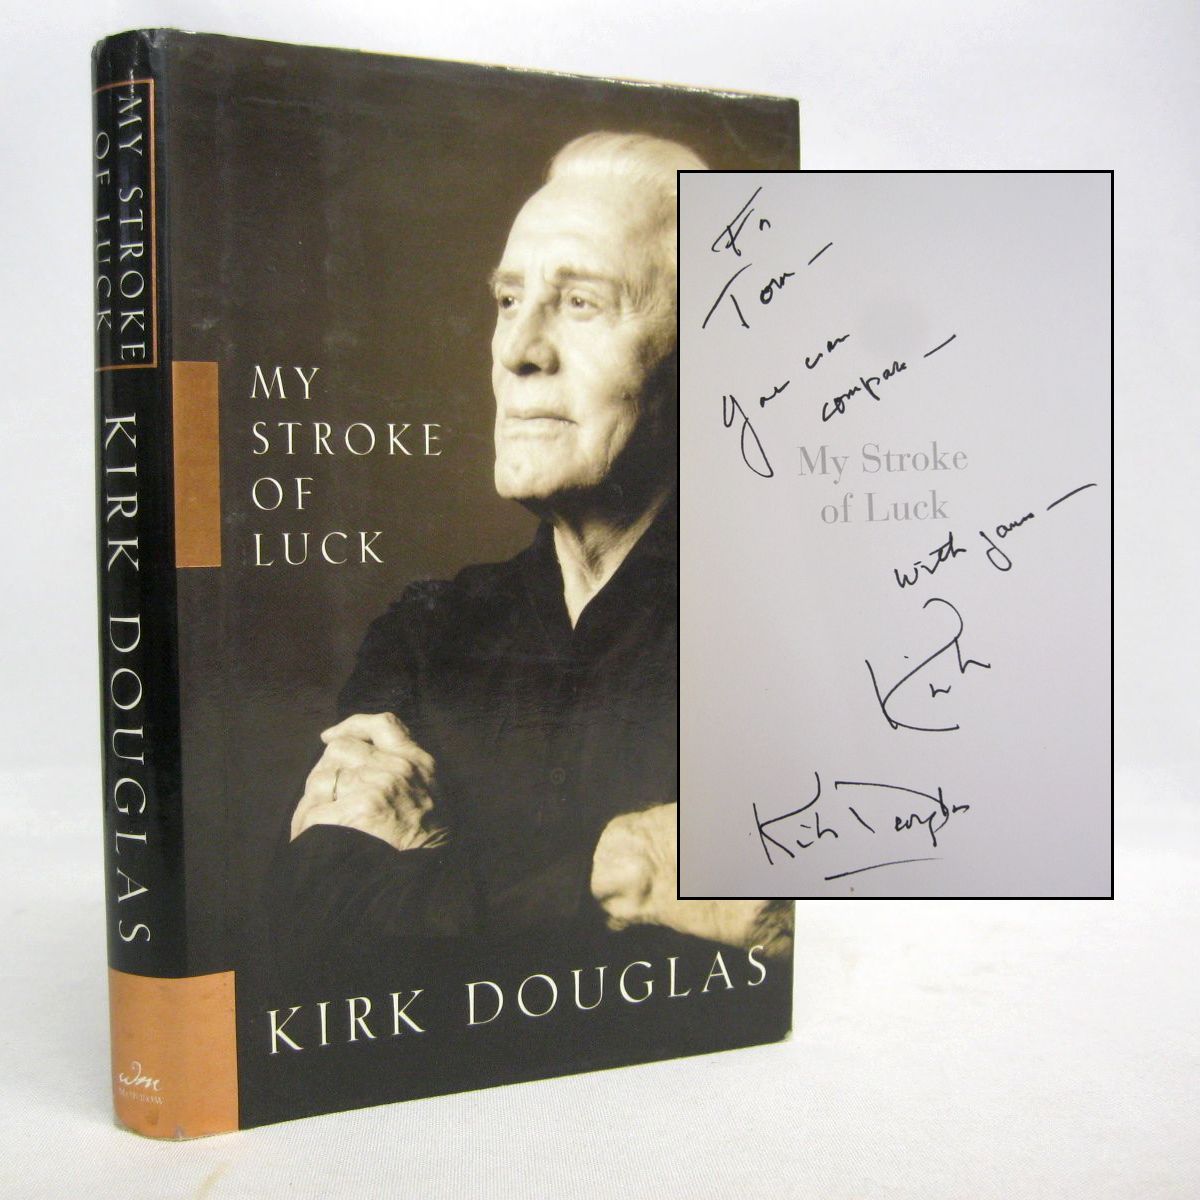 My Stroke of Luck by Kirk Douglas